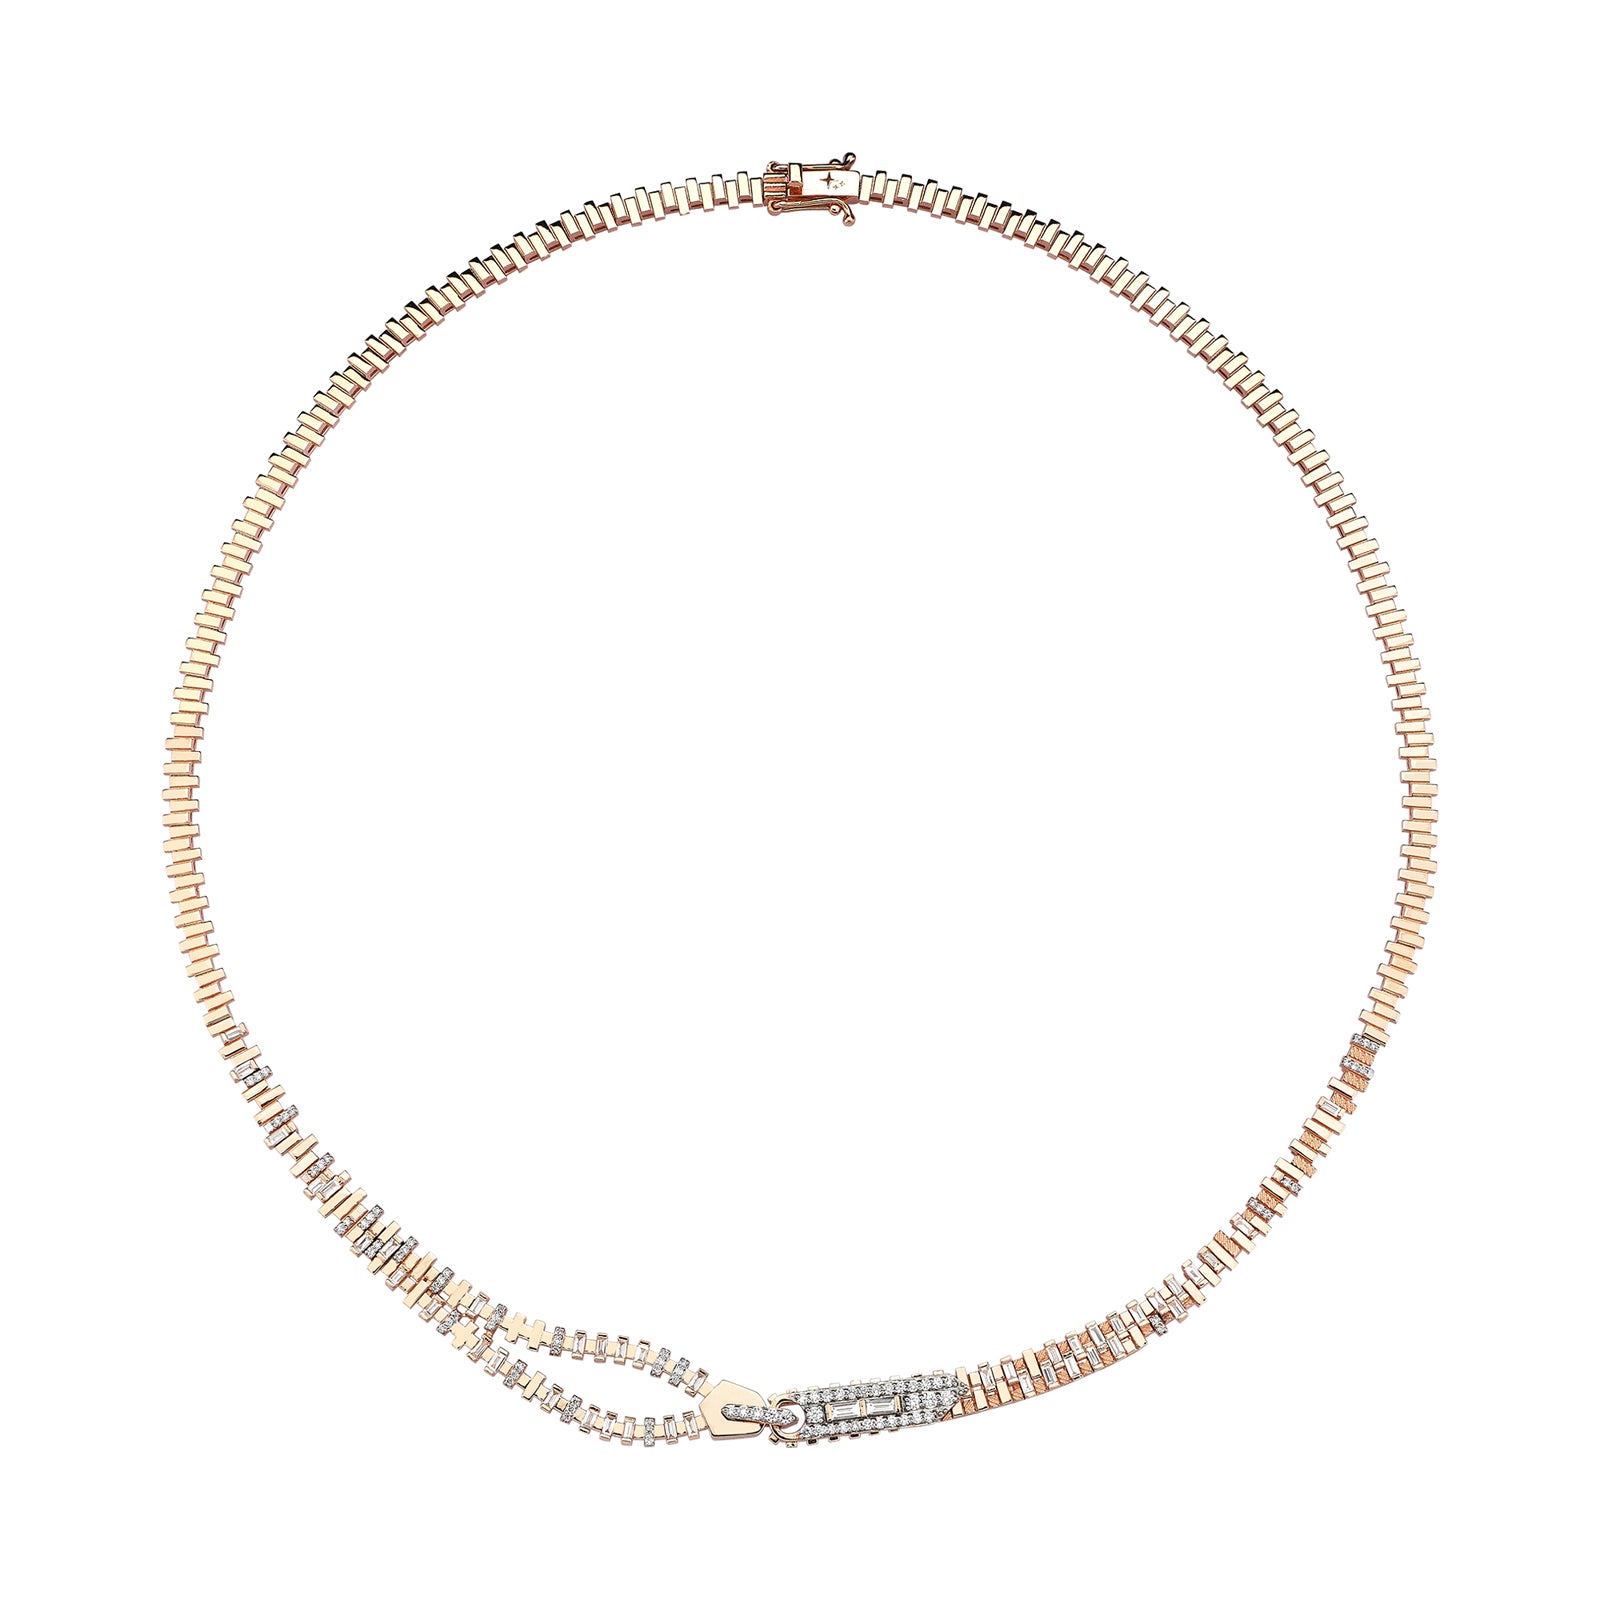 Zipper Necklace Roslow Gold / White Brilliant Diamond